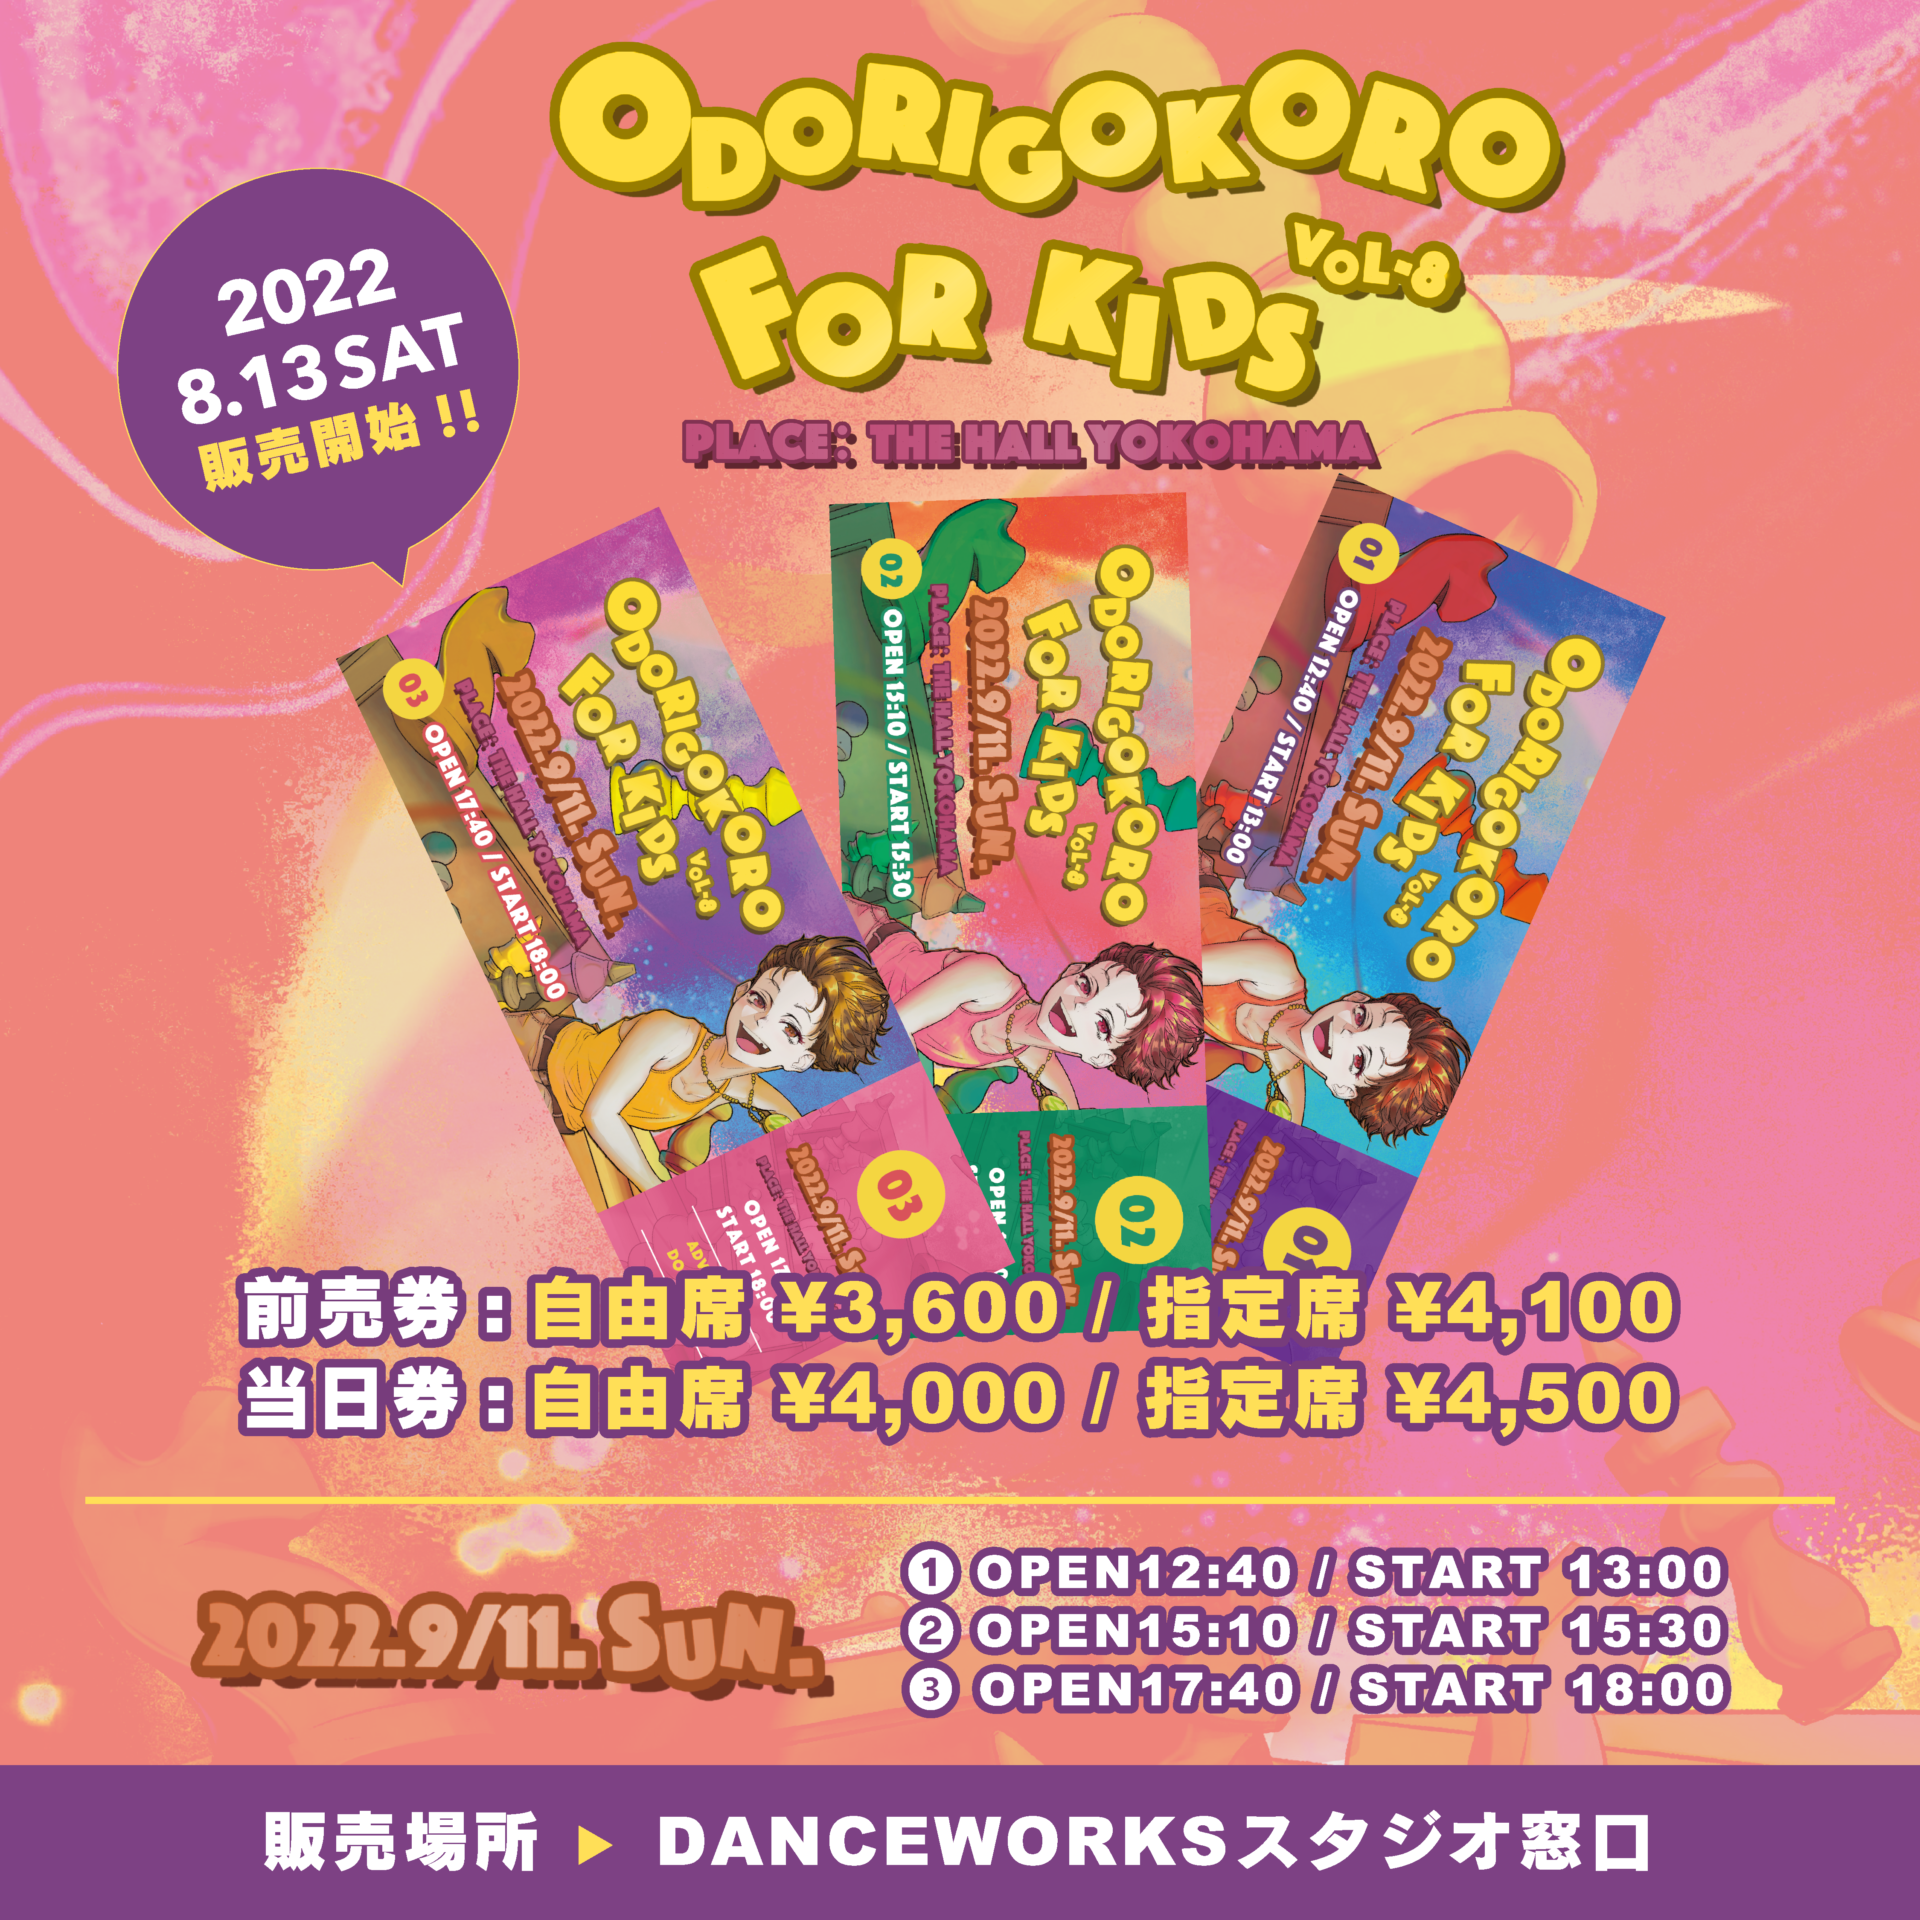 [ ODORIGOKORO for KIDS Vol.8 ] 自由席 / 指定席チケット8/13(土)12:00より販売開始！！！